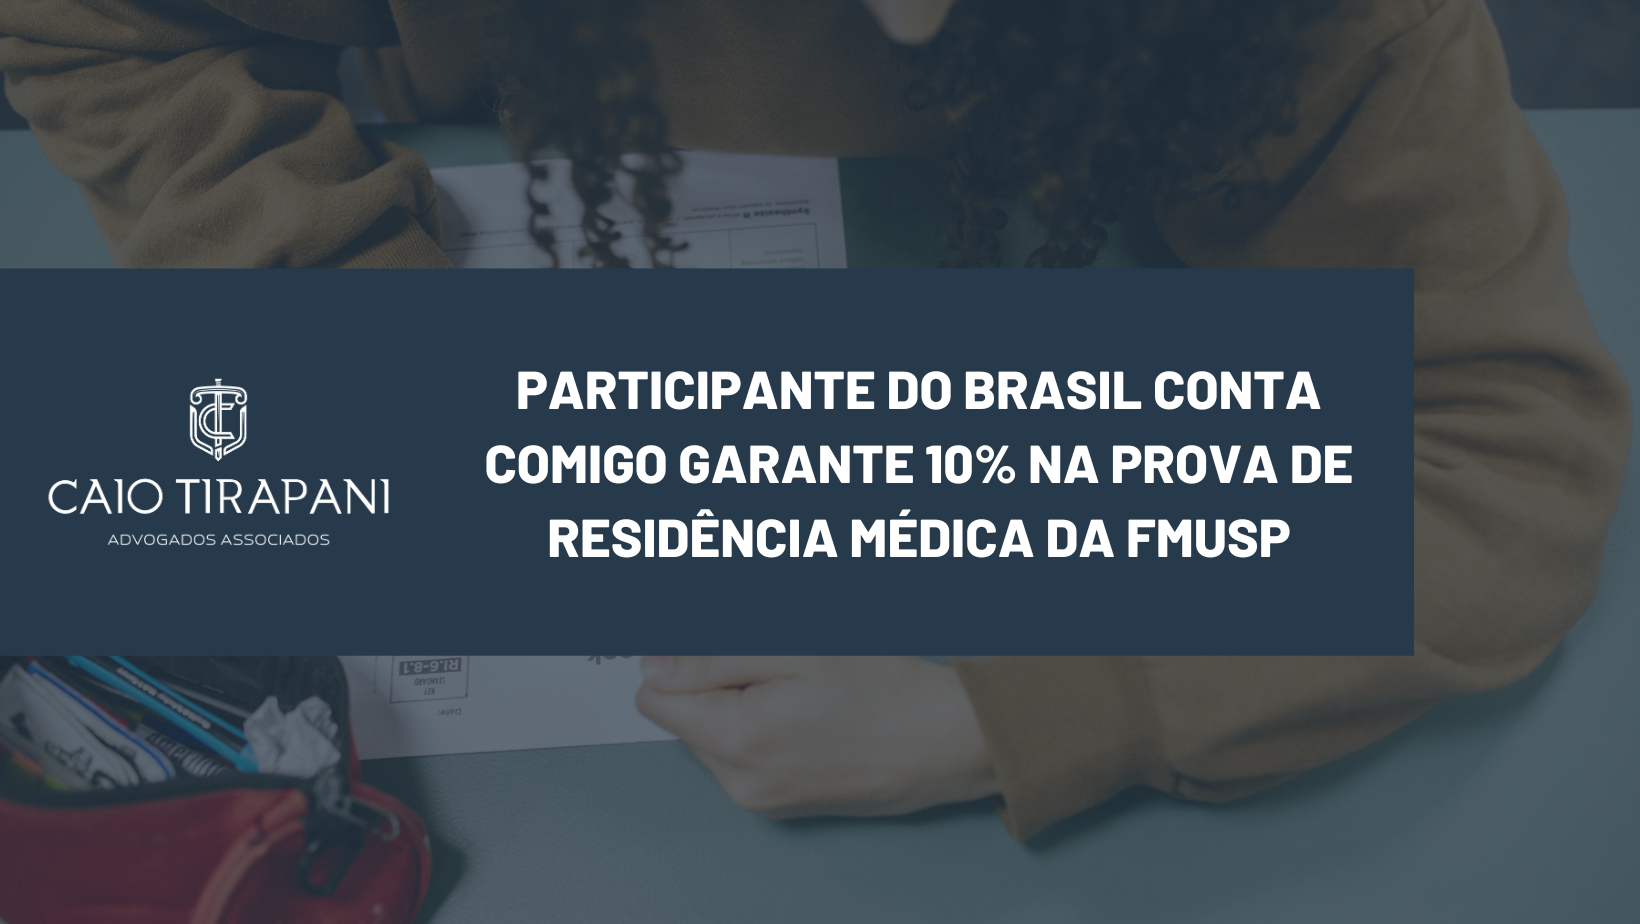 PARTICIPANTE DO BRASIL CONTA COMIGO GARANTE 10% NA PROVA DE RESIDÊNCIA MÉDICA DA FMUSP